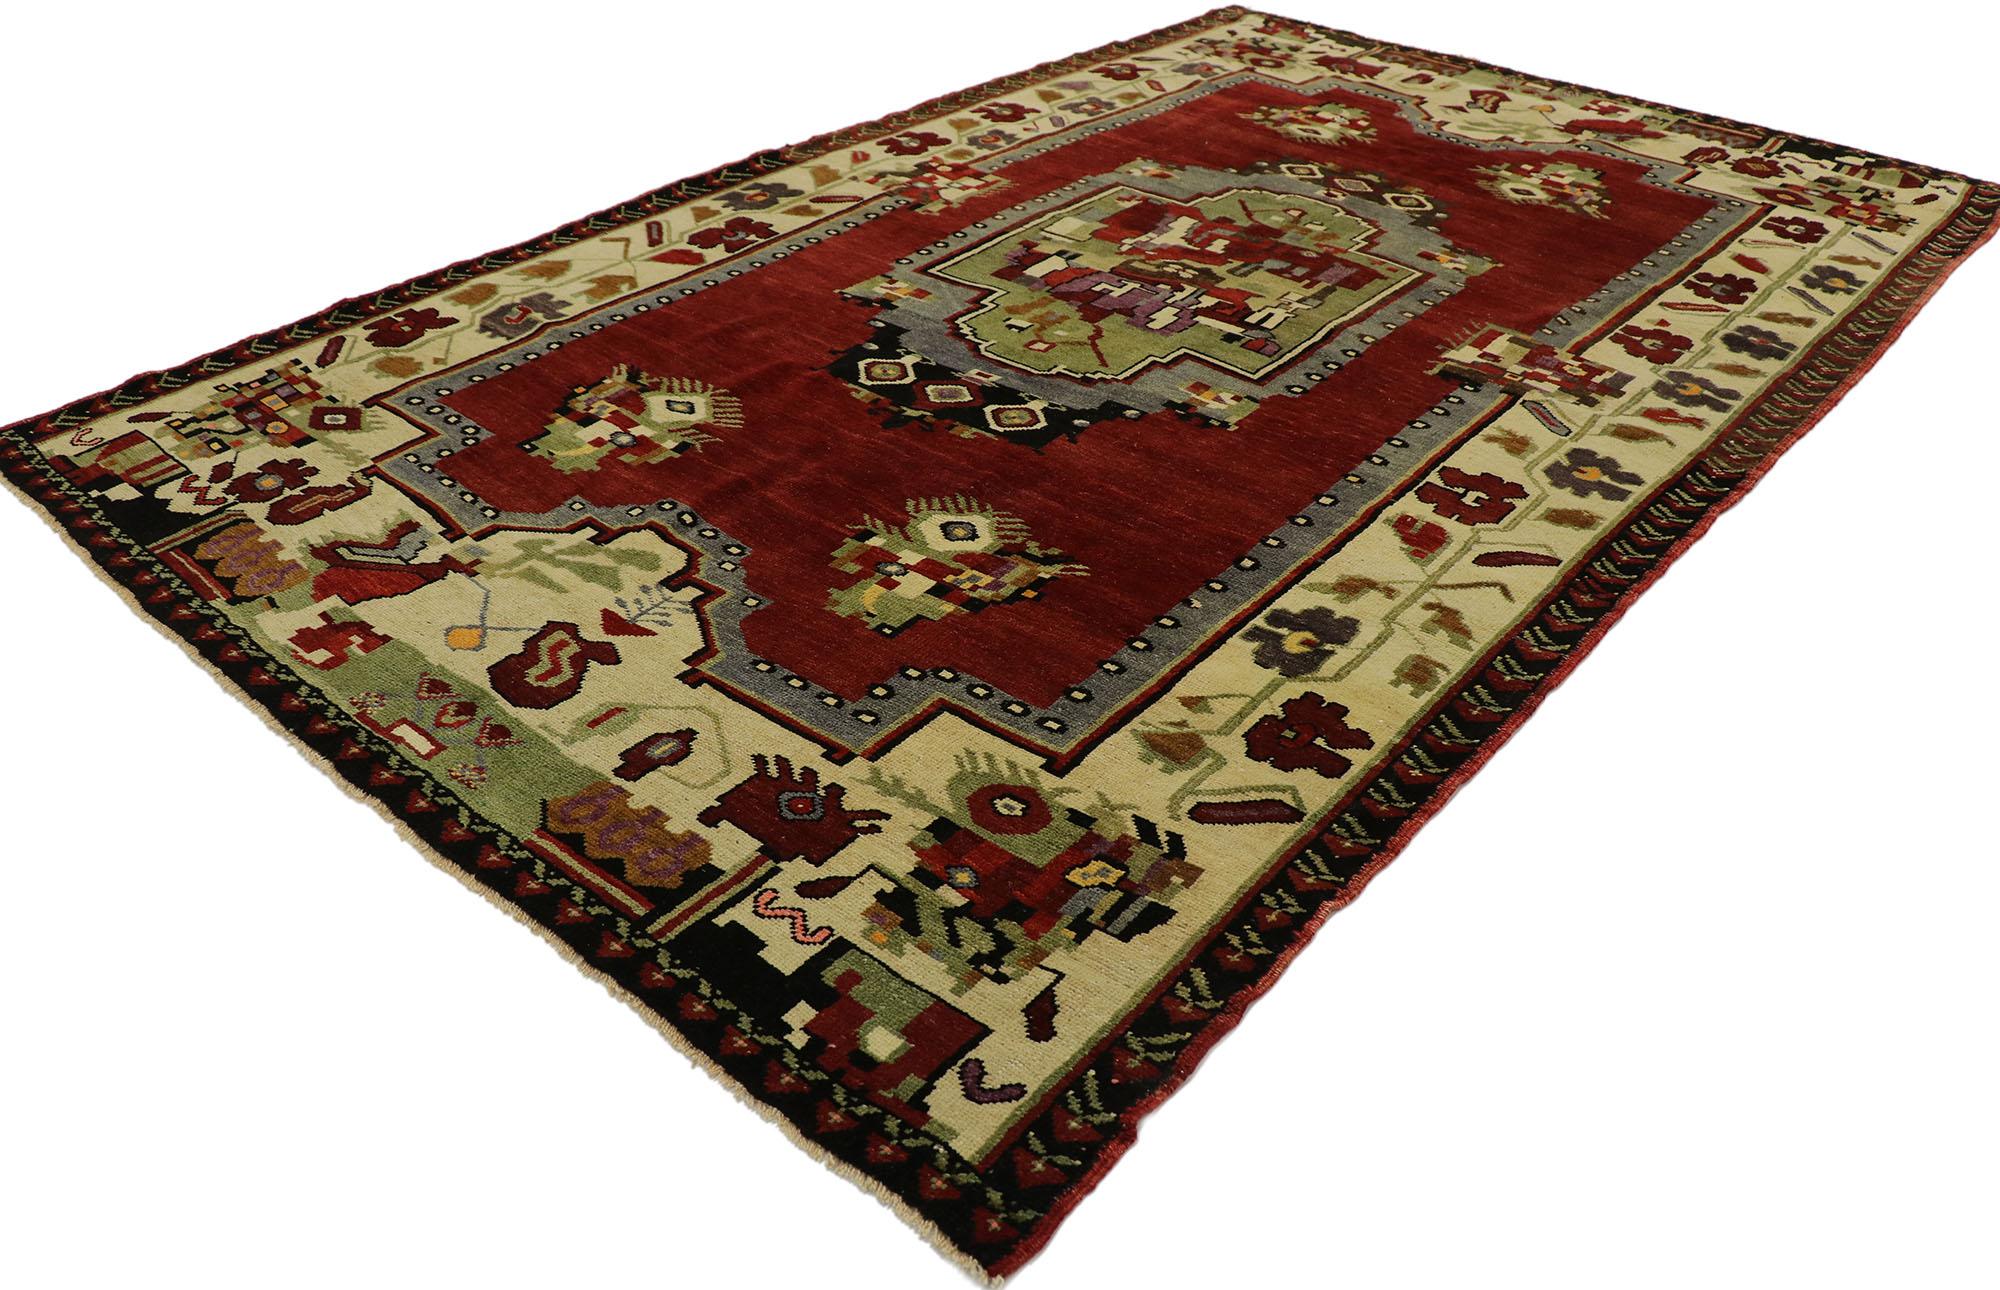 53180 tapis vintage turc Oushak de style médiéval anglais Tudor. Riche en détails et d'aspect traditionnel, ce tapis turc Oushak vintage en laine noué à la main incarne à merveille le style médiéval anglais Tudor. Le champ rouge foncé abrasé